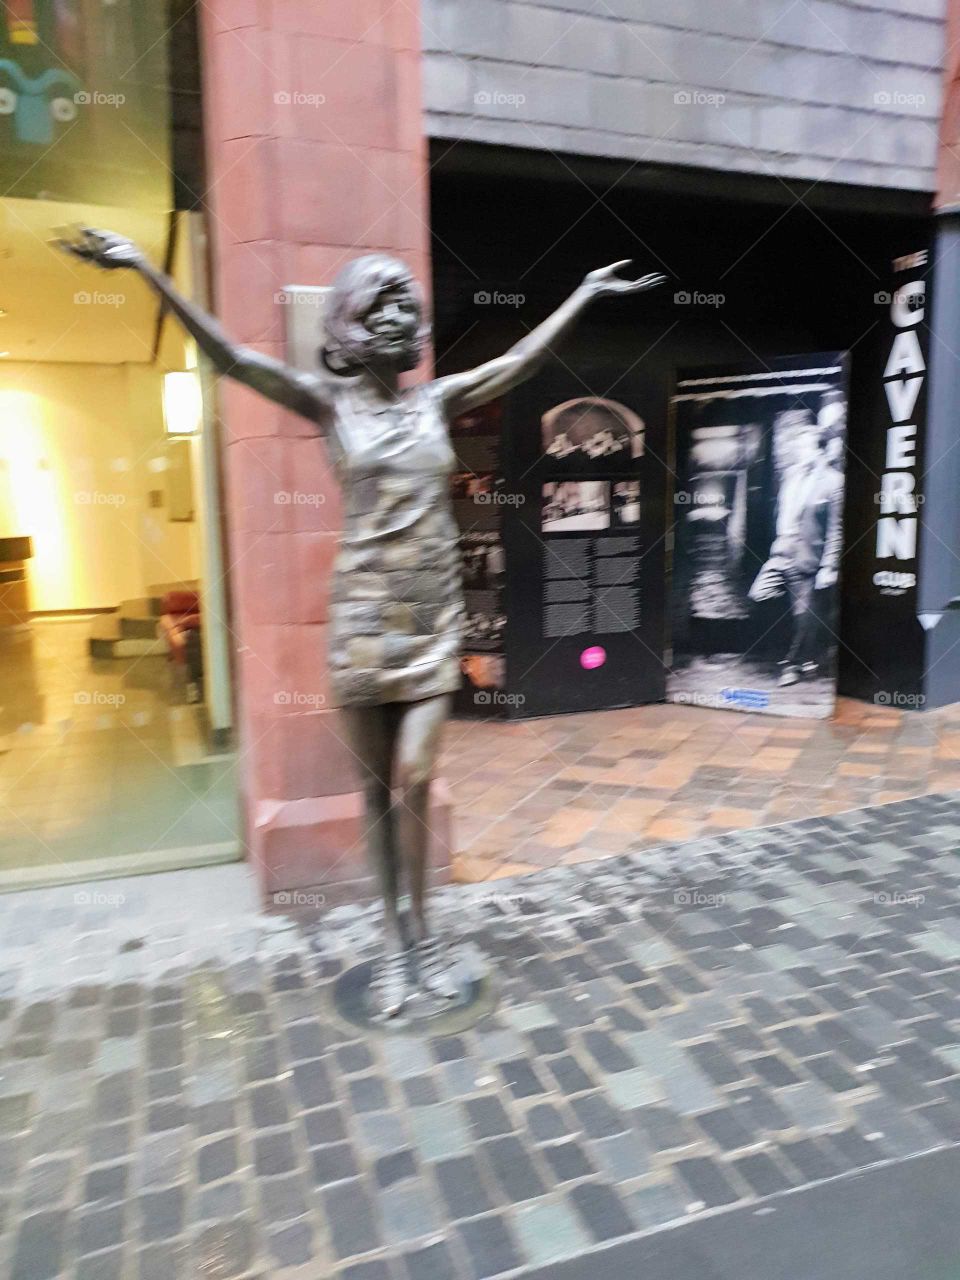 cilla black statue Liverpool